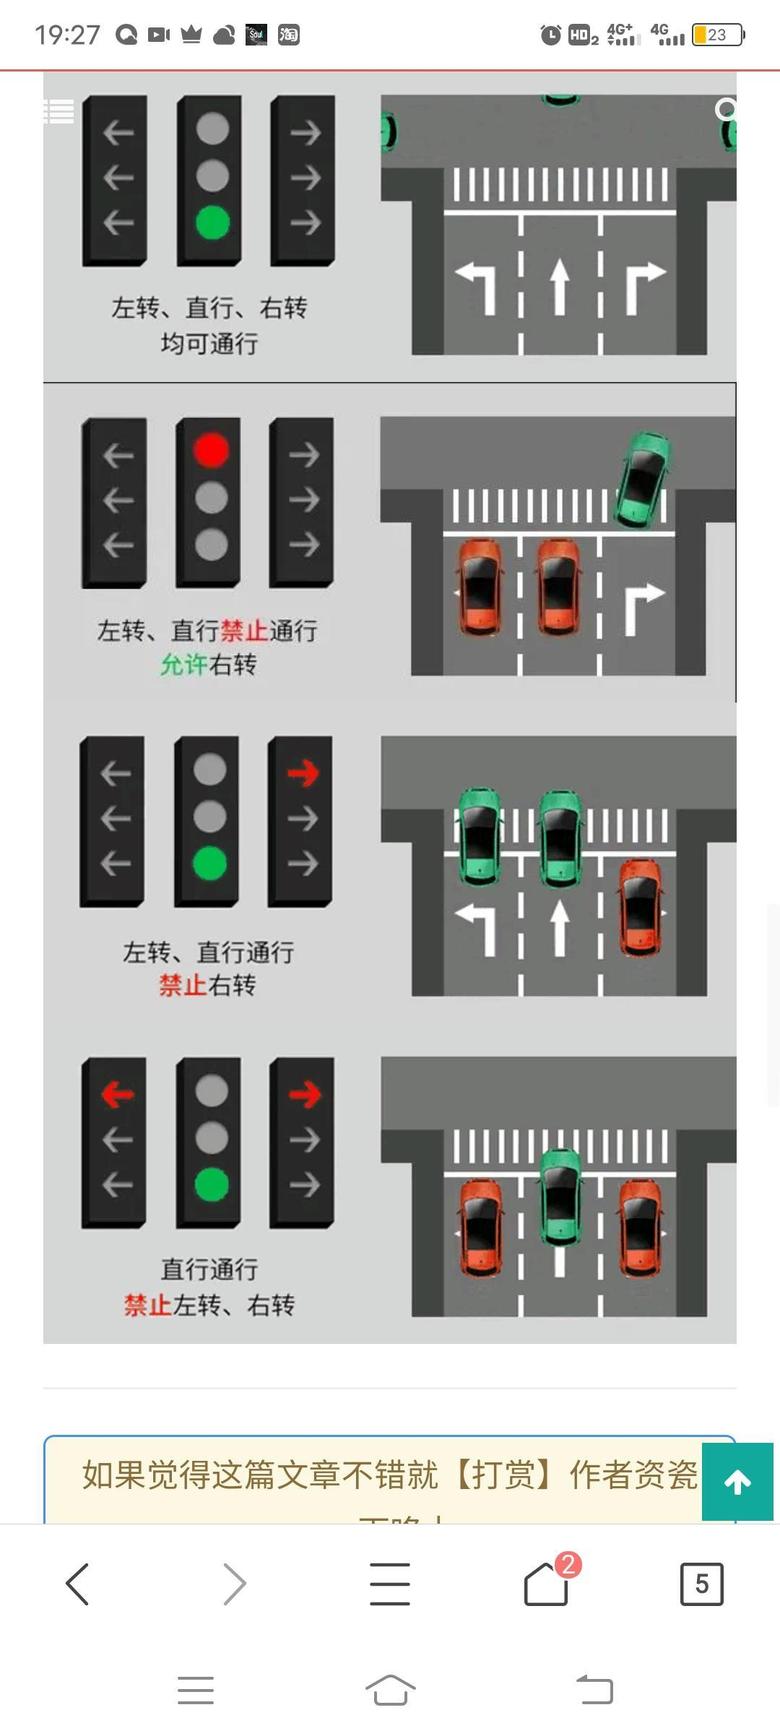 远景x6 可能就只有一个直行是红灯这个会搞错了由于他两边都是灯灭了的而新款红绿灯是灯灭了，或者亮绿灯都可以通行，哈哈这个要千万记住，只能右转，